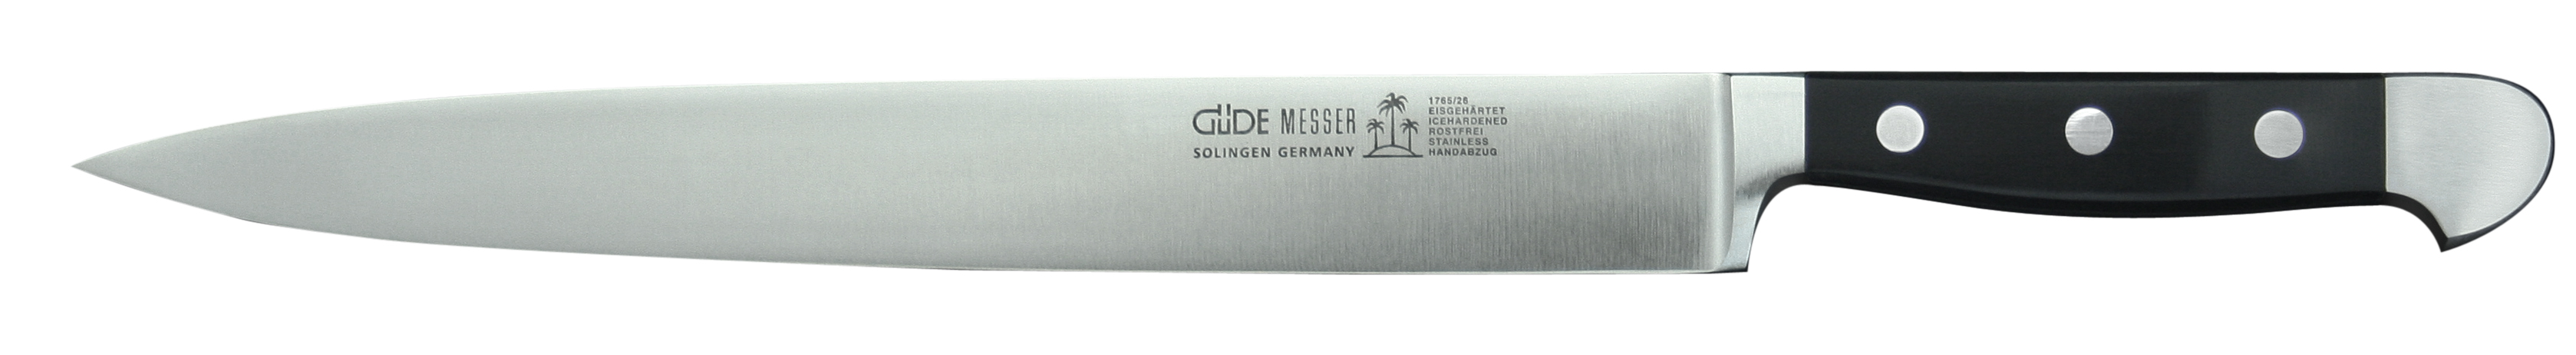 Güde Alpha Schinkenmesser 26 cm / CVM-Messerstahl mit Griffschalen aus Hostaform